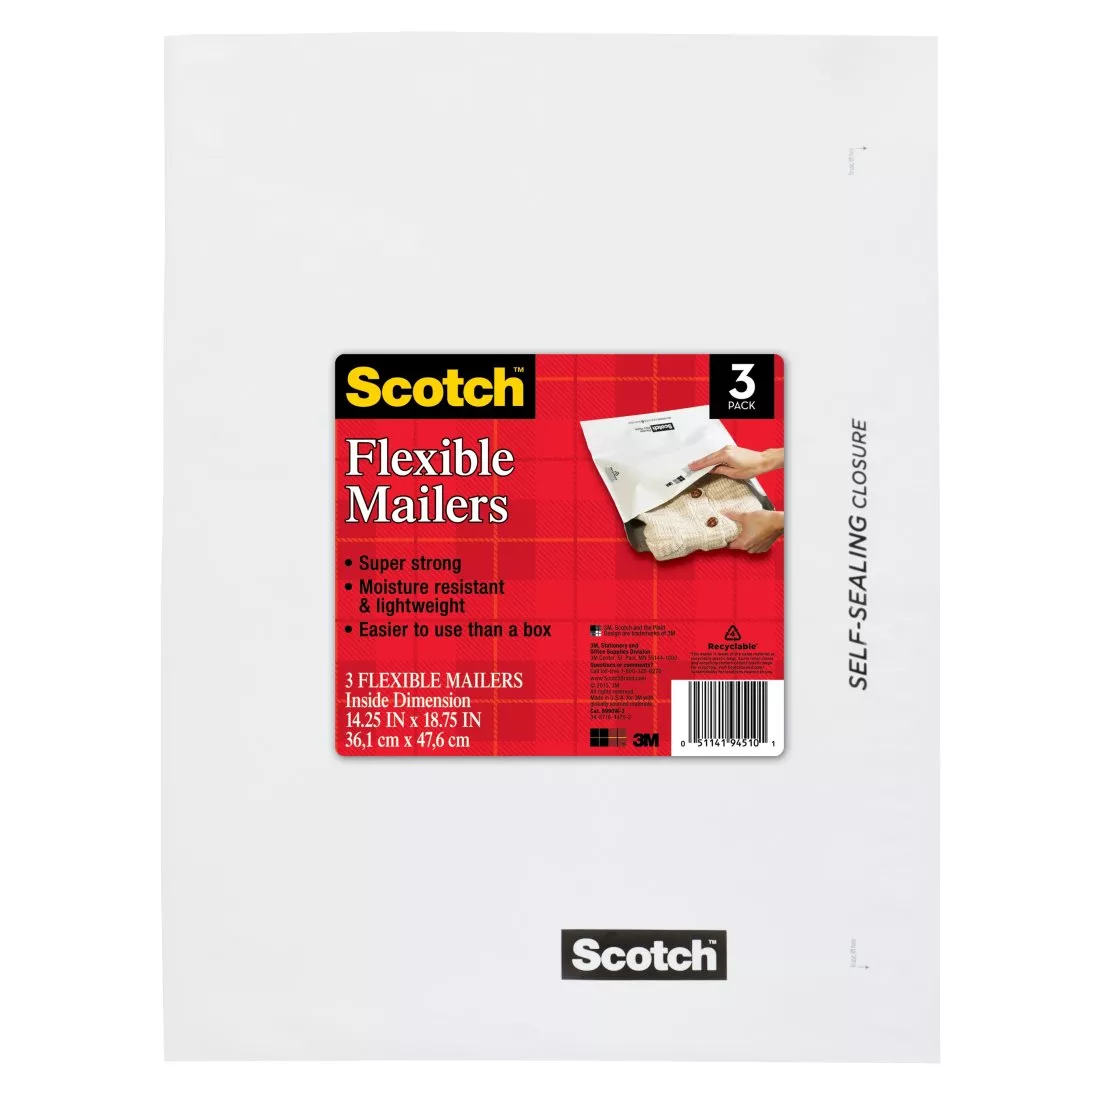 Scotch™ Flexible Mailers 3-Pack, 8990W-3, 14.25 in x 18.75 in (36,1 cm x
47,6 cm)